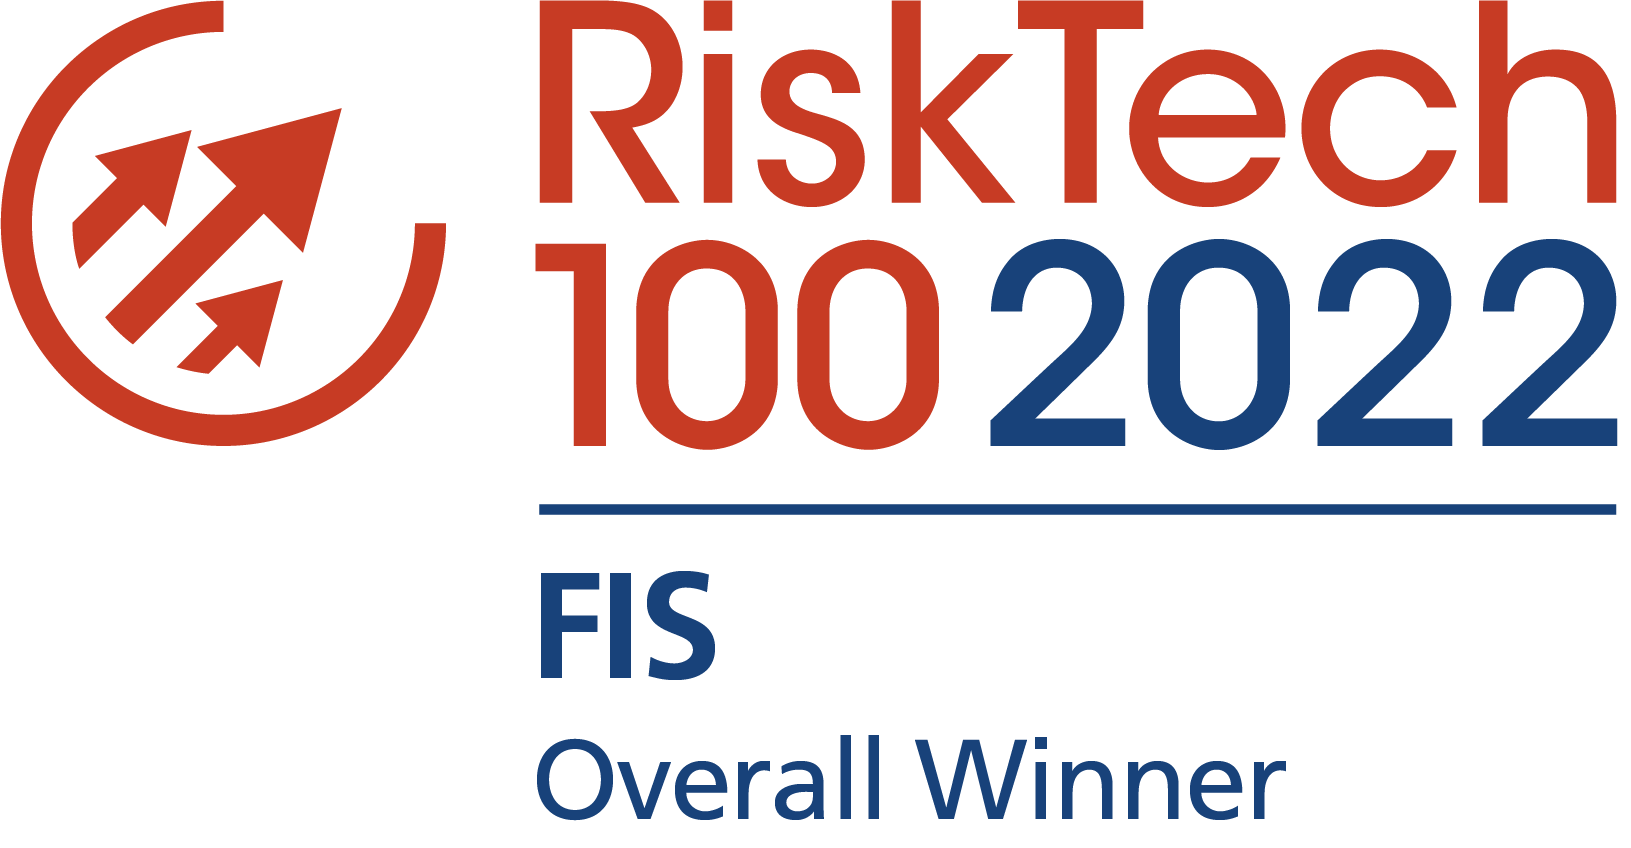 Chartis RiskTech100 2022 Overall Winner FIS